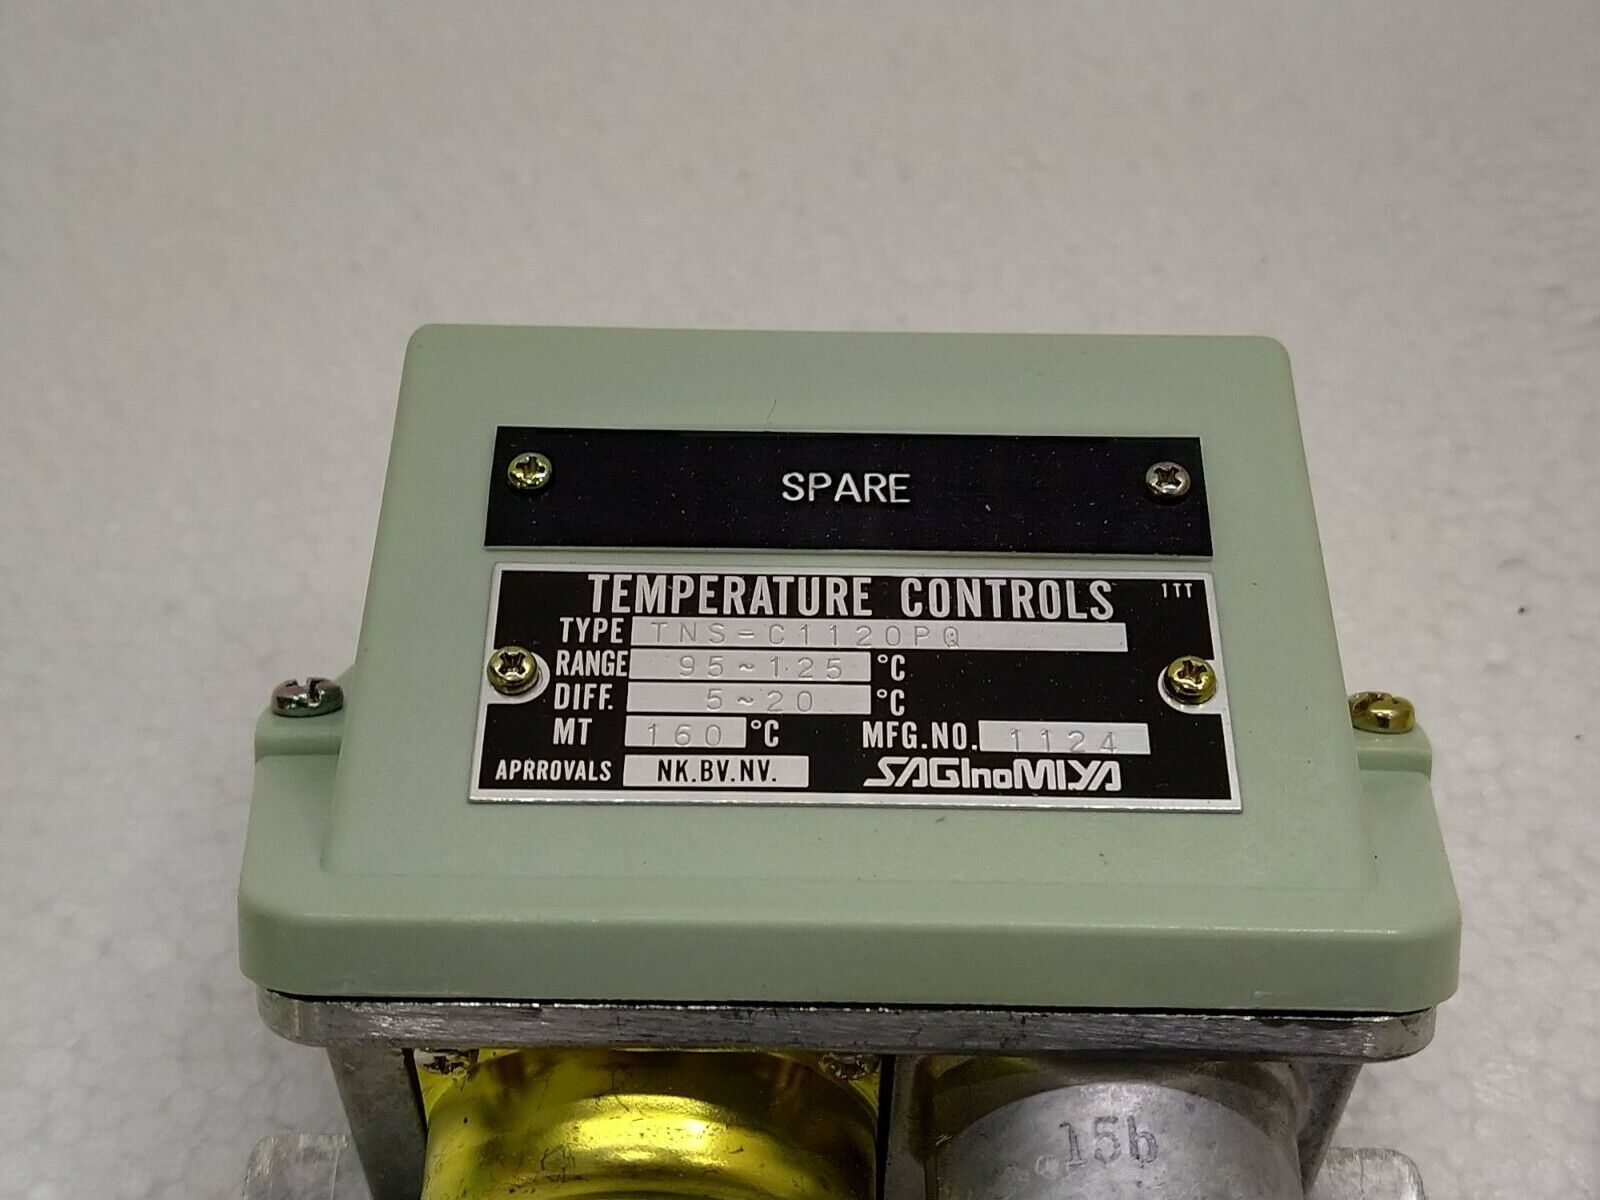 Saginomiya TNS-C1120PQ Temperature Controls TNSC1120PQ 95-125'C